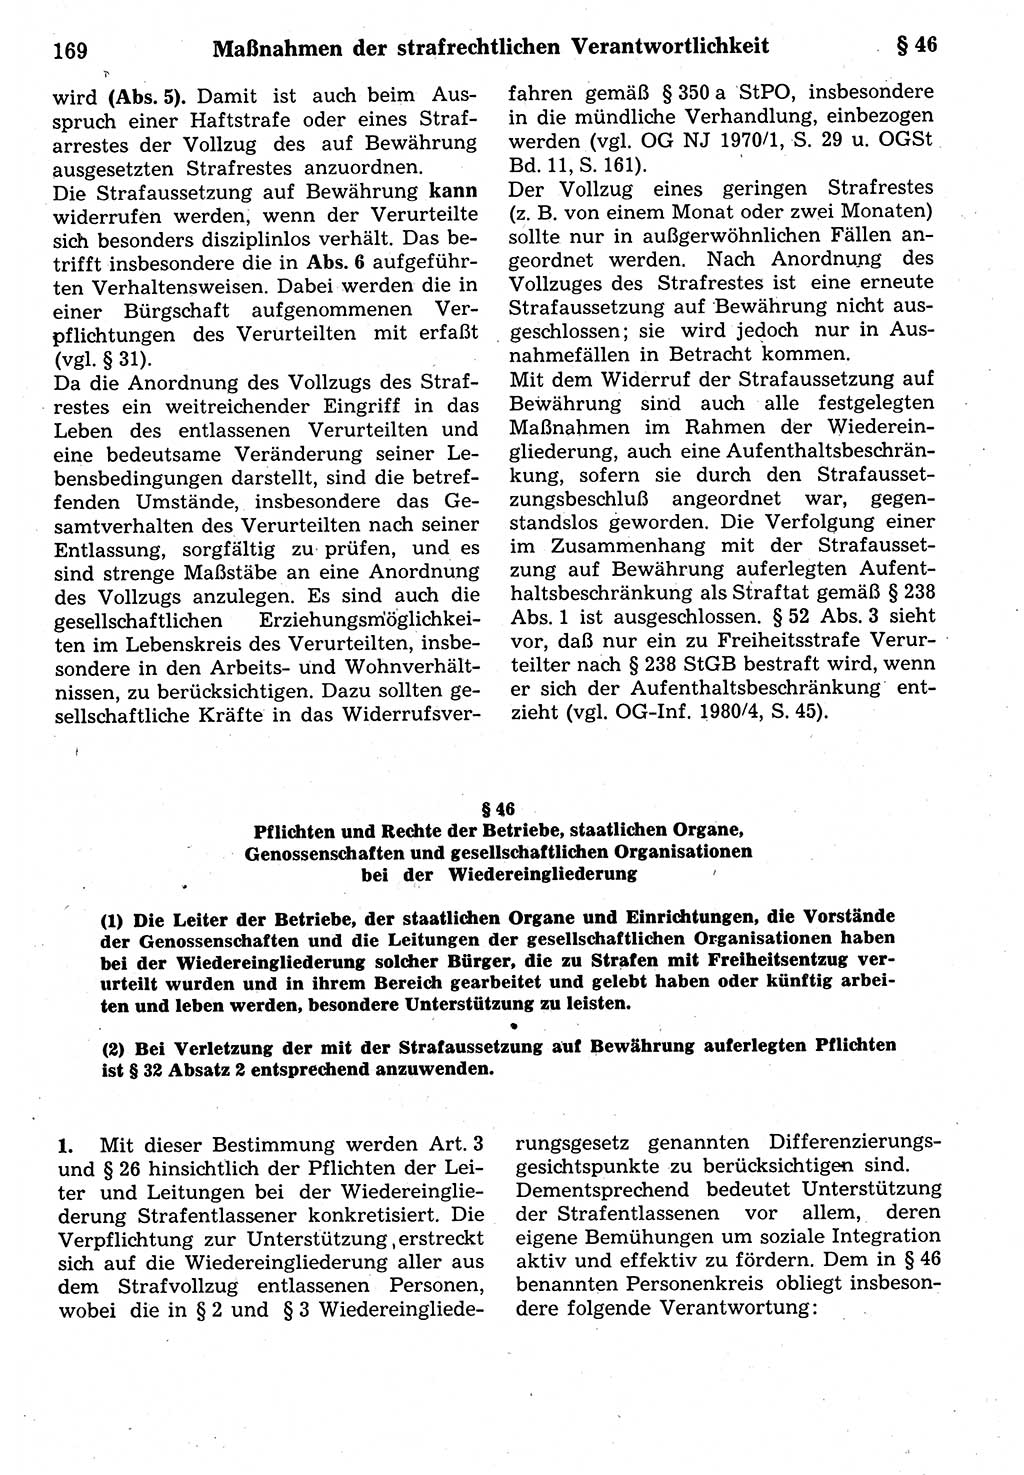 Strafrecht der Deutschen Demokratischen Republik (DDR), Kommentar zum Strafgesetzbuch (StGB) 1987, Seite 169 (Strafr. DDR Komm. StGB 1987, S. 169)